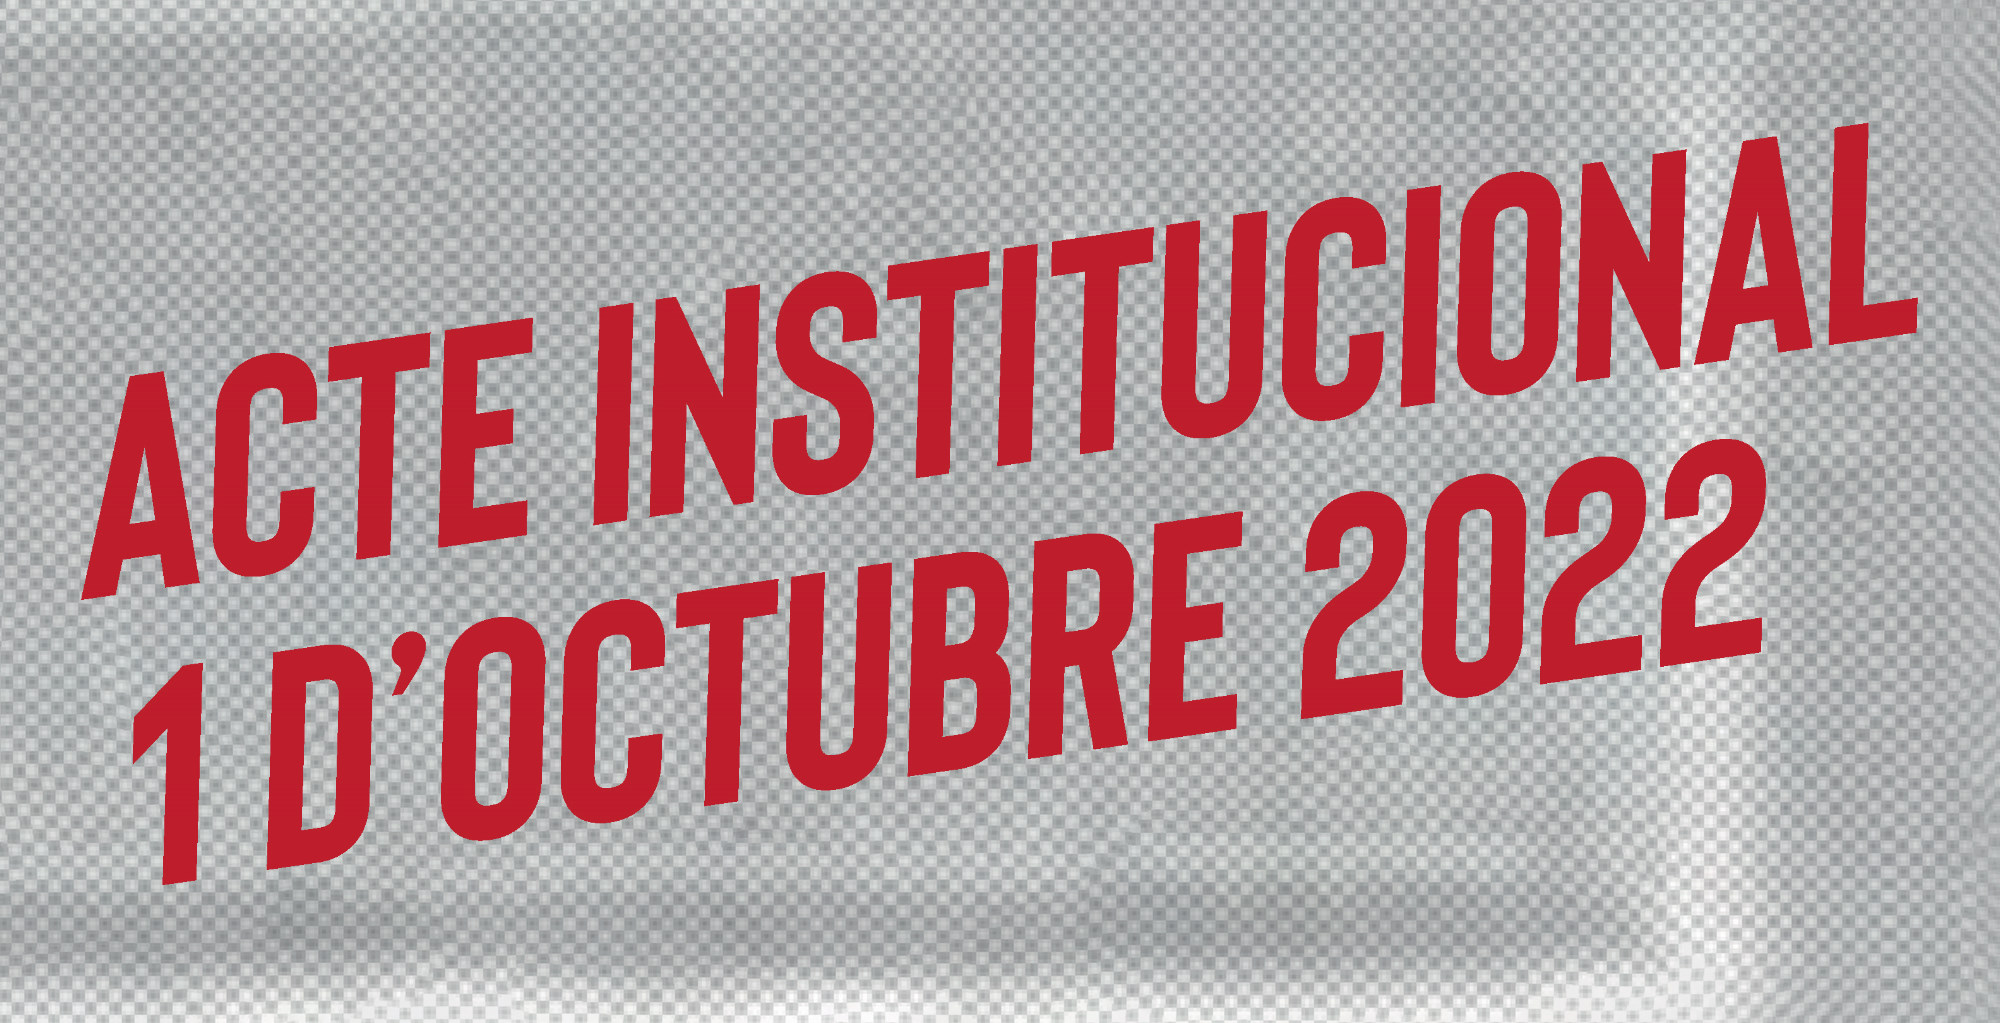 Acte institucional 1-O 2022